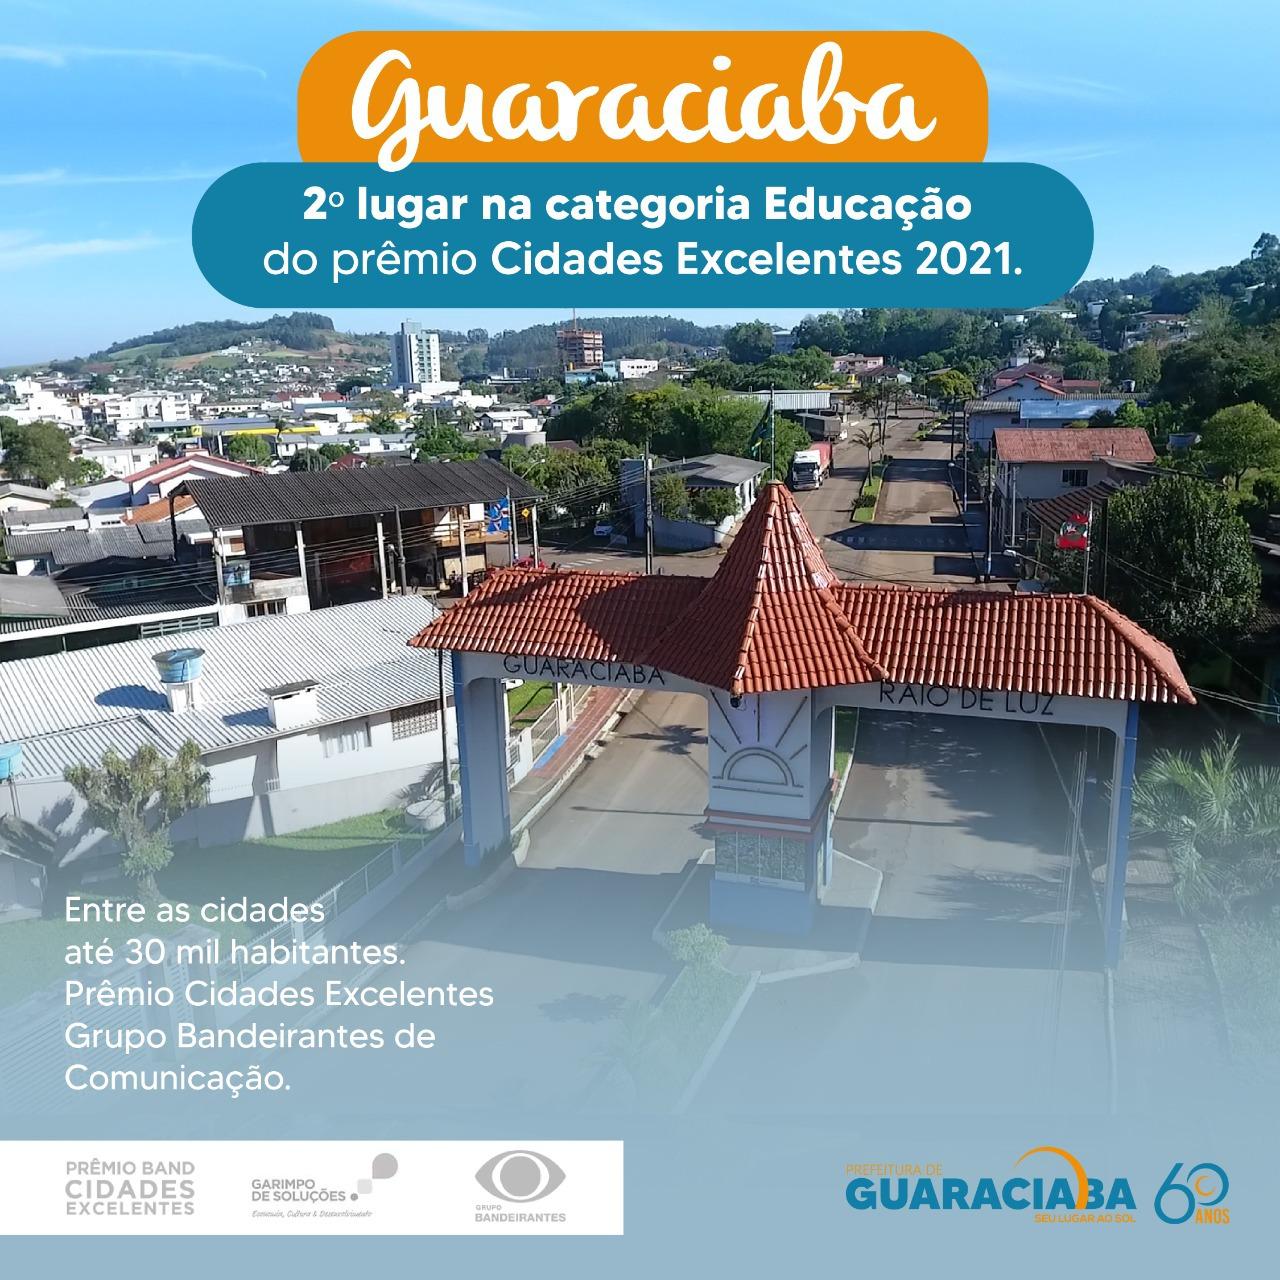 Guaraciaba conquista o 2º lugar na Categoria Educação do Prêmio Cidades Excelentes 2021